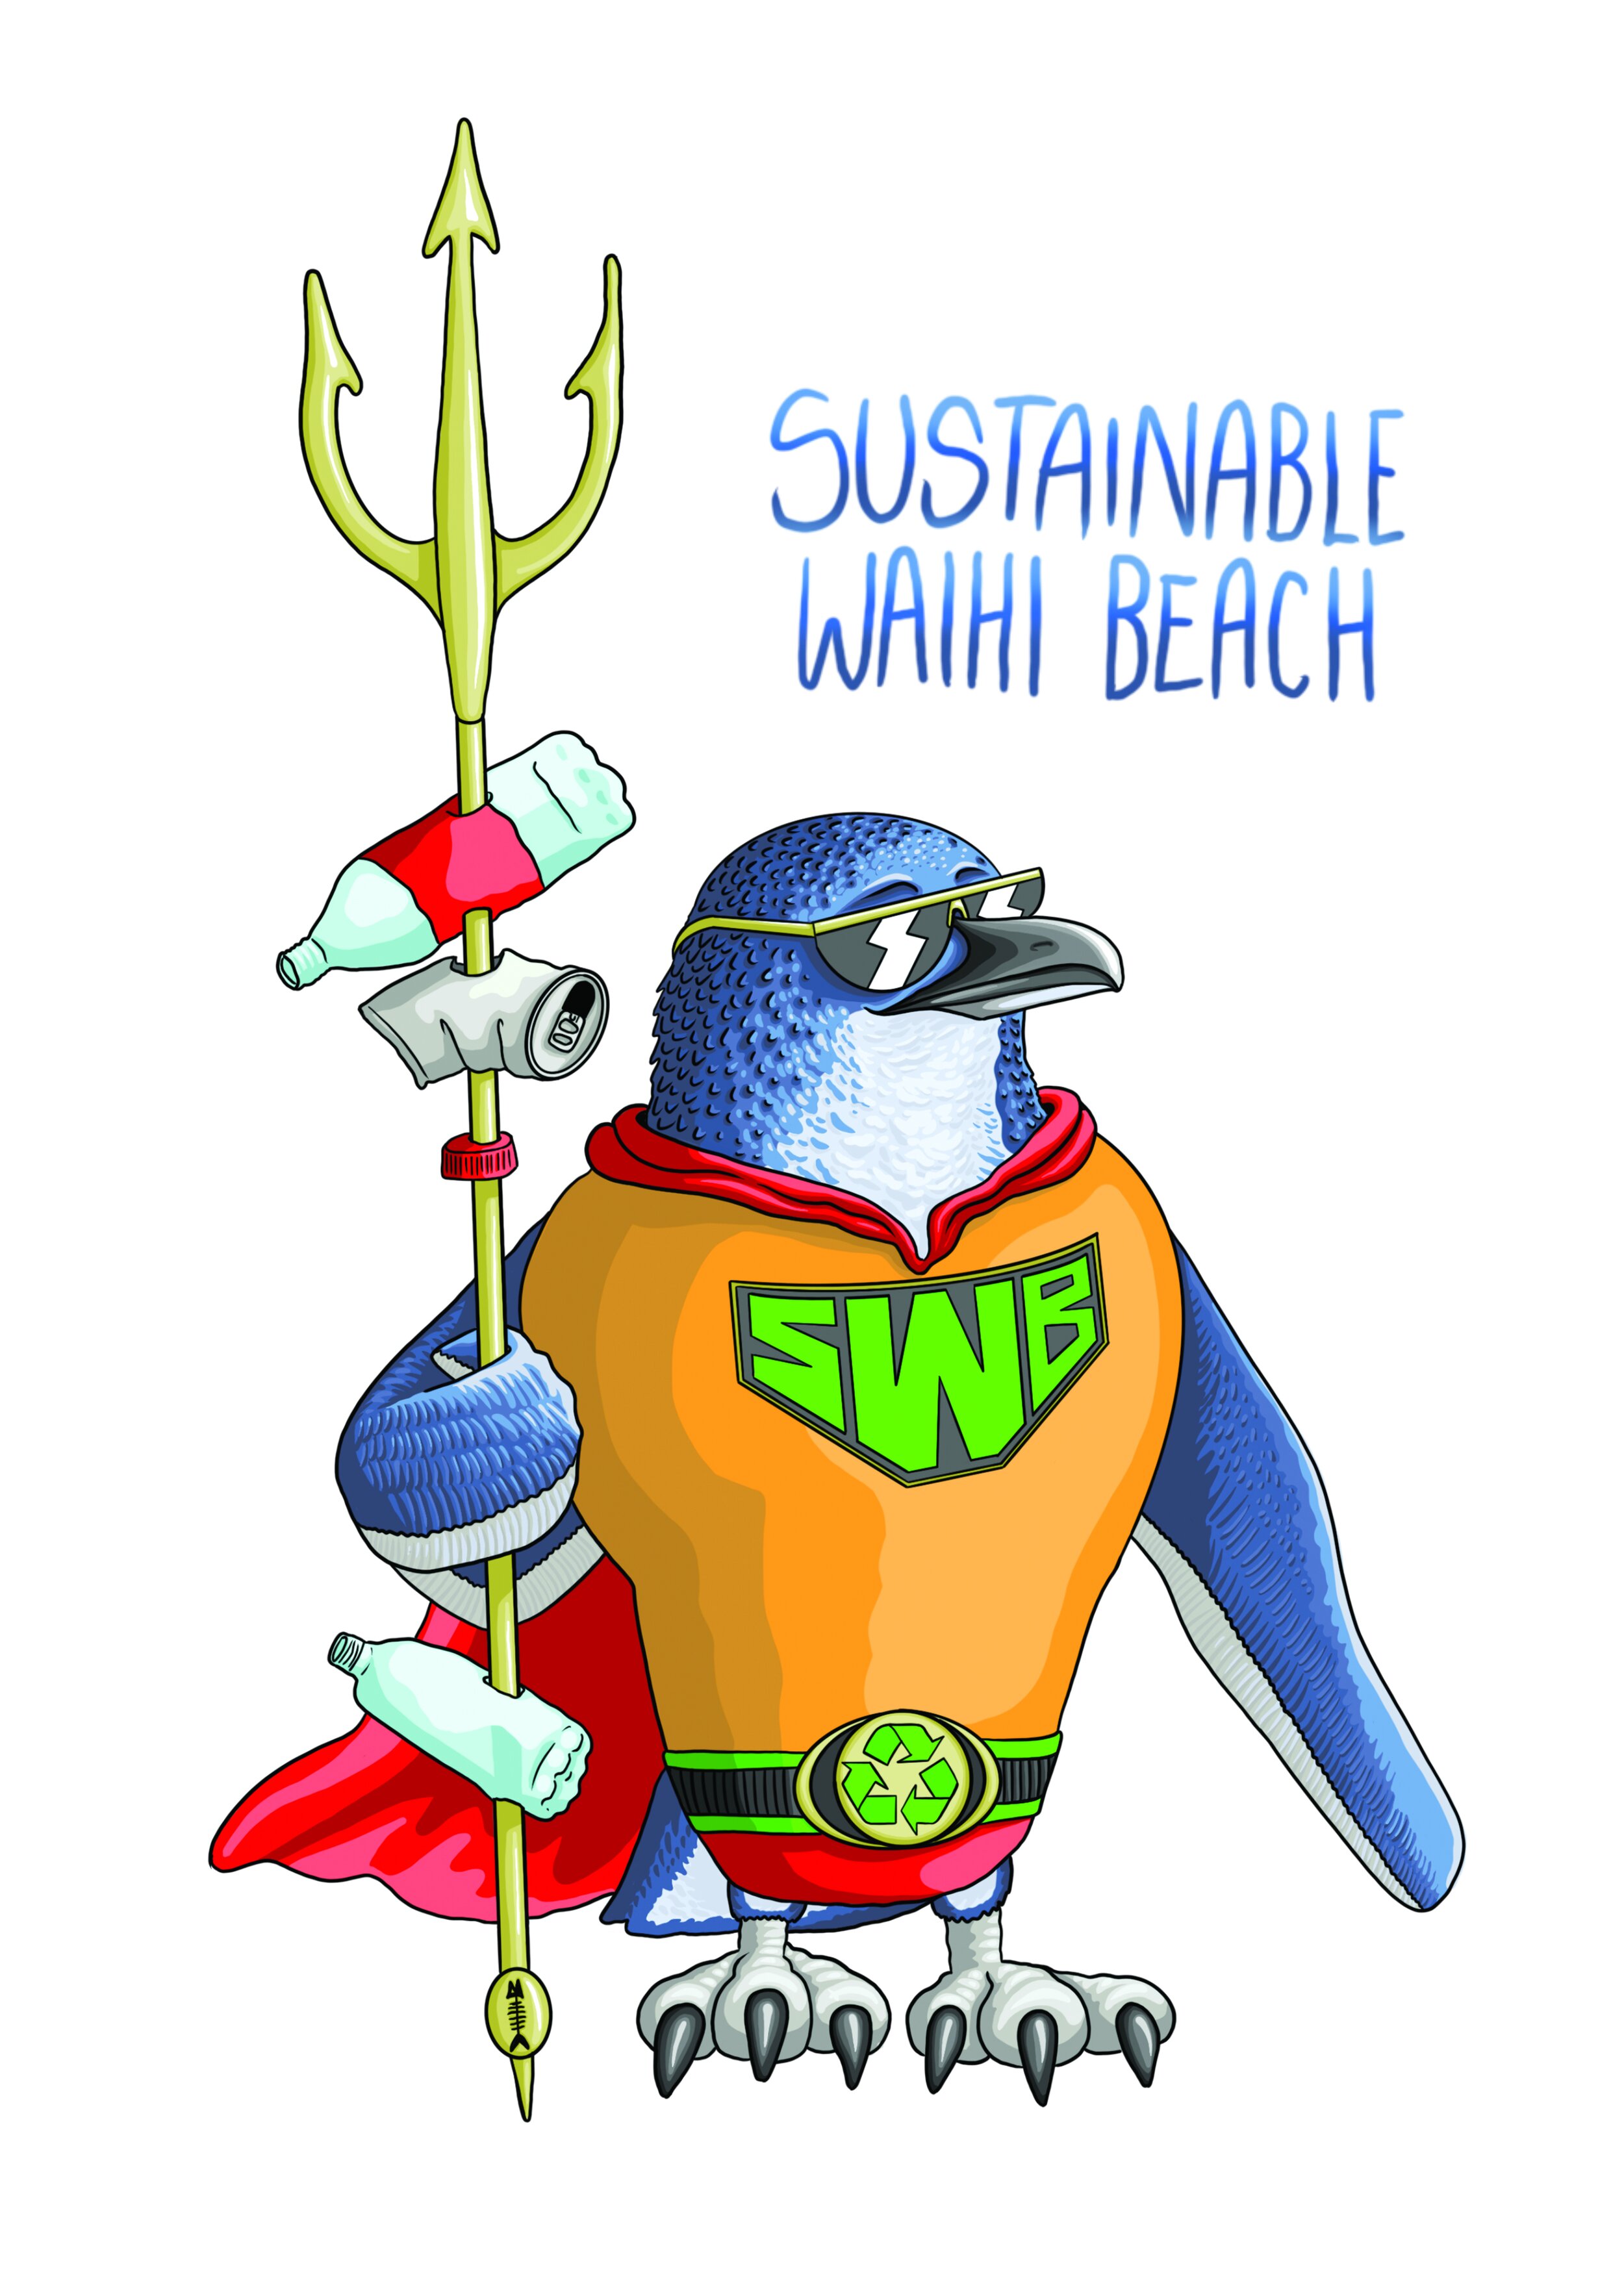 Sustainable Waihi Beach